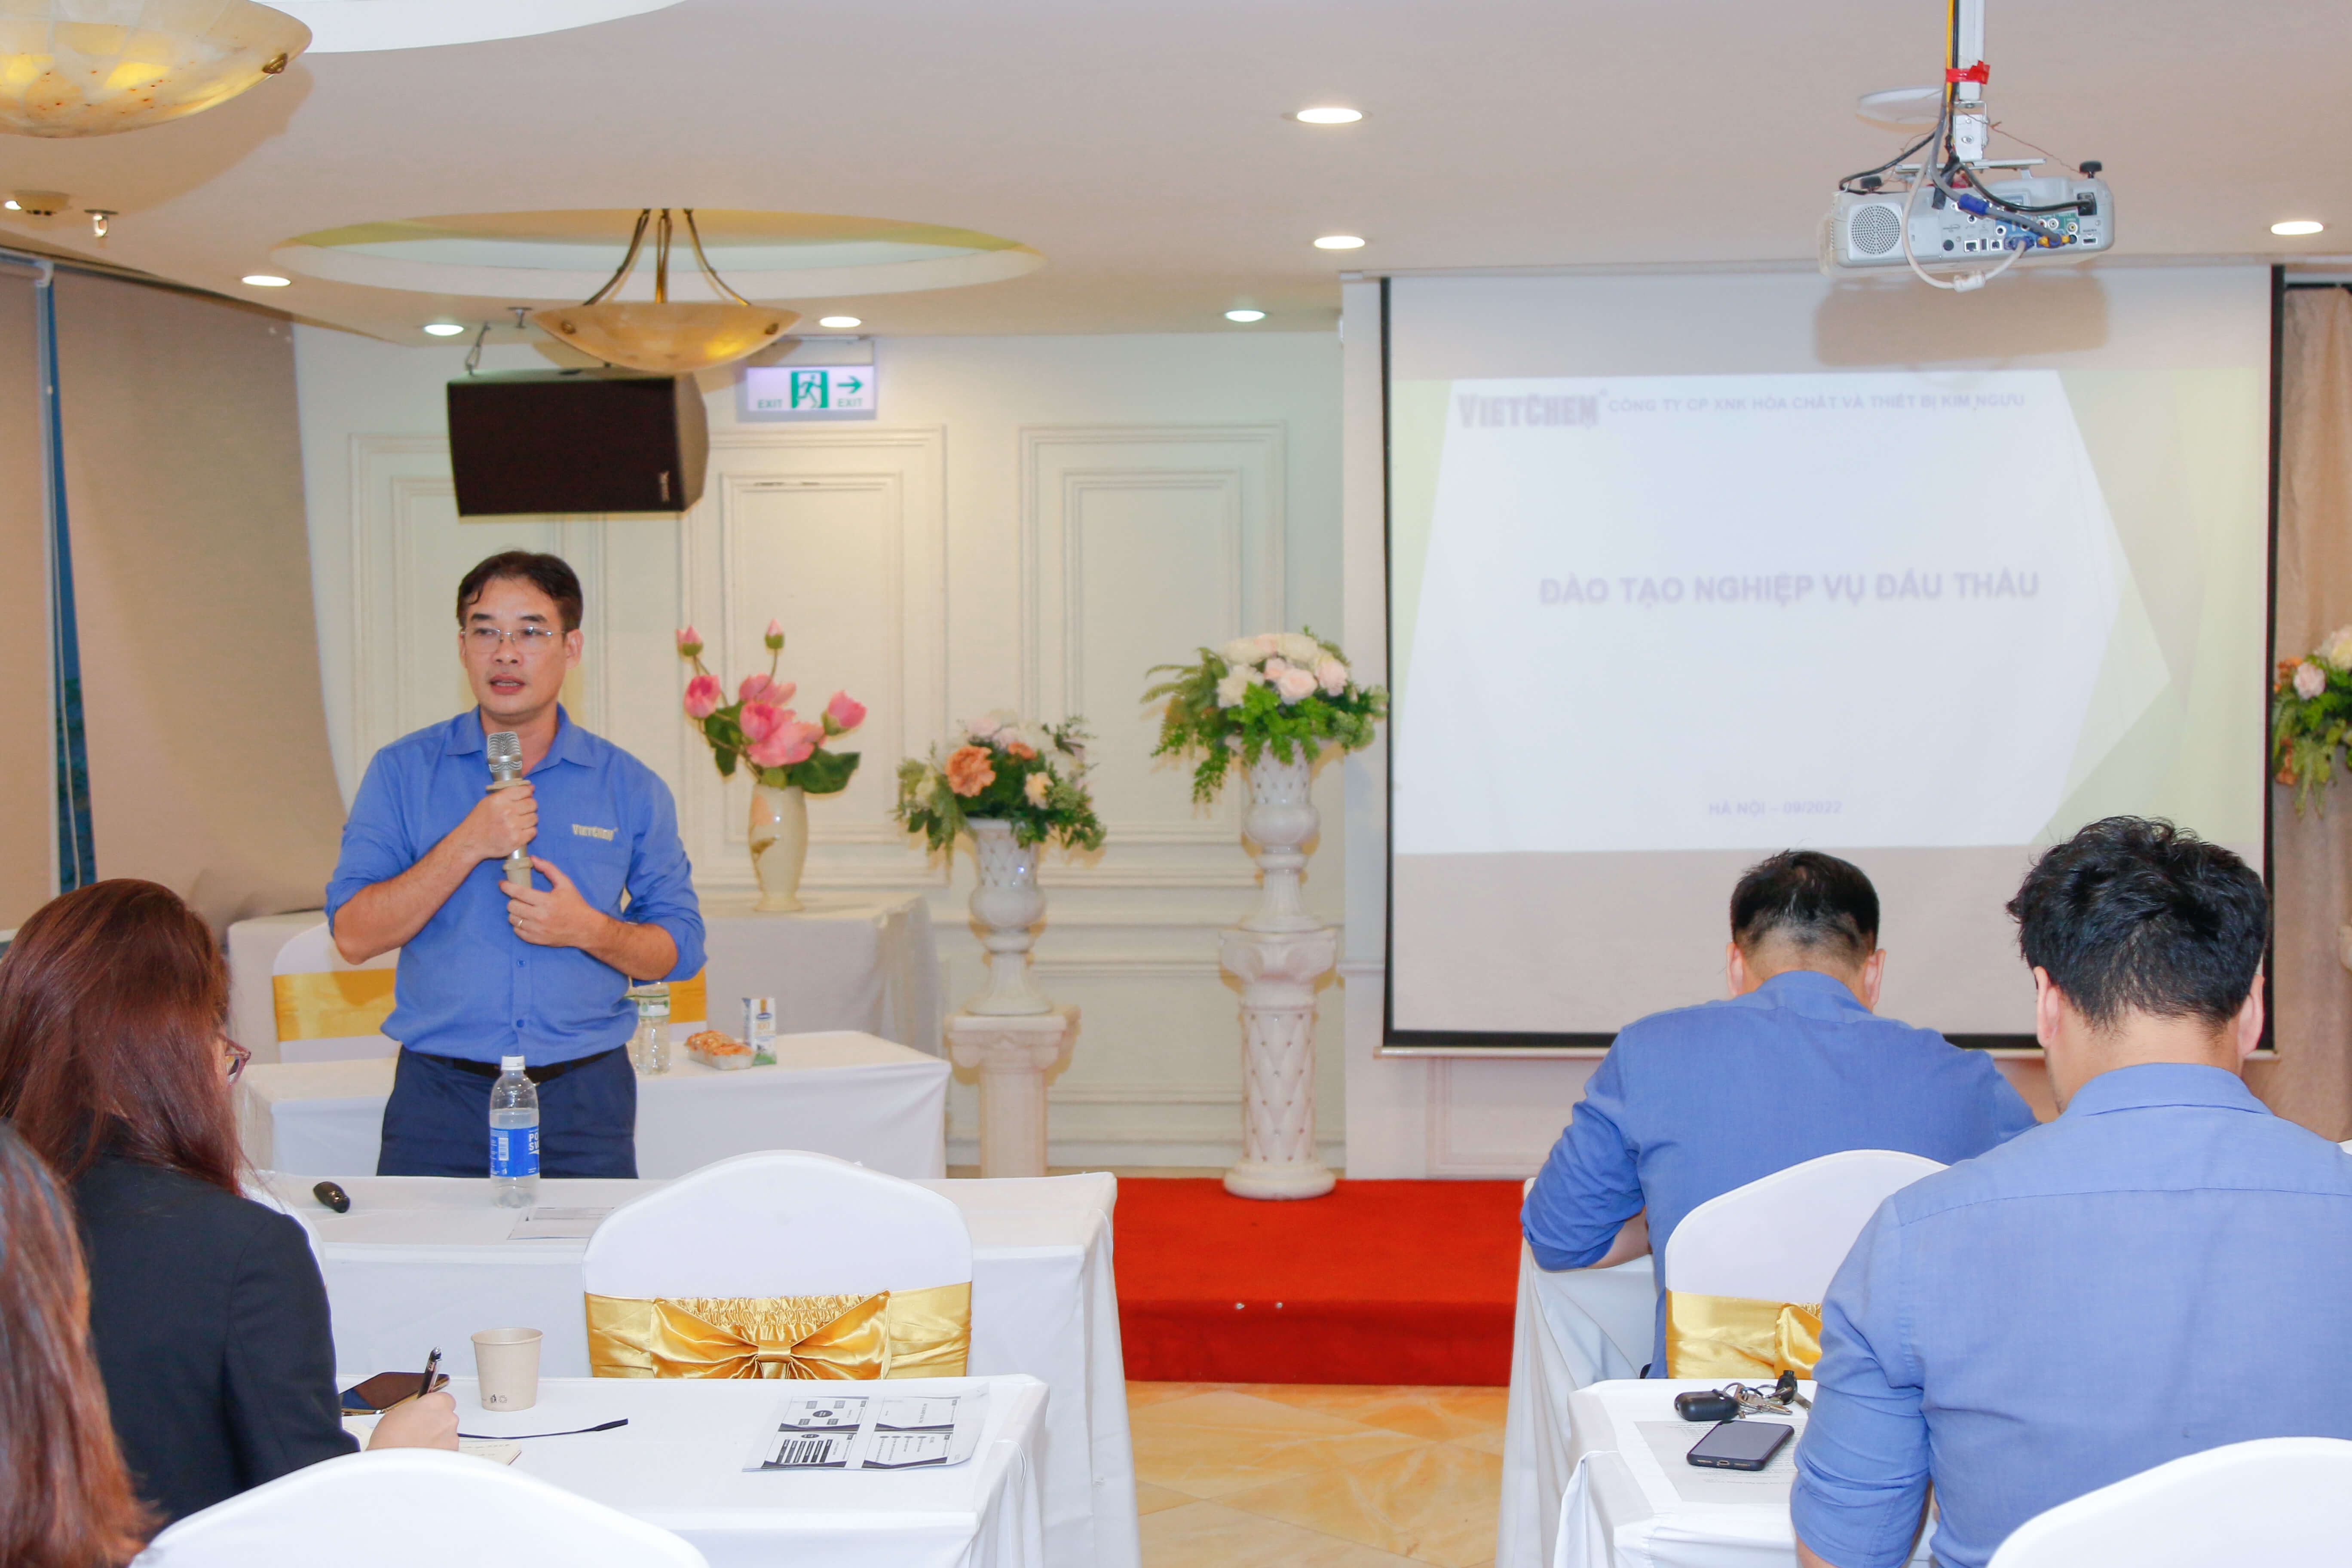 Tổng giám đốc Nguyễn Xuân Hải mang đến nhiều kiến thức bổ ích trong hoạt động đấu thầu cho CBNV trong buổi đào tạo.